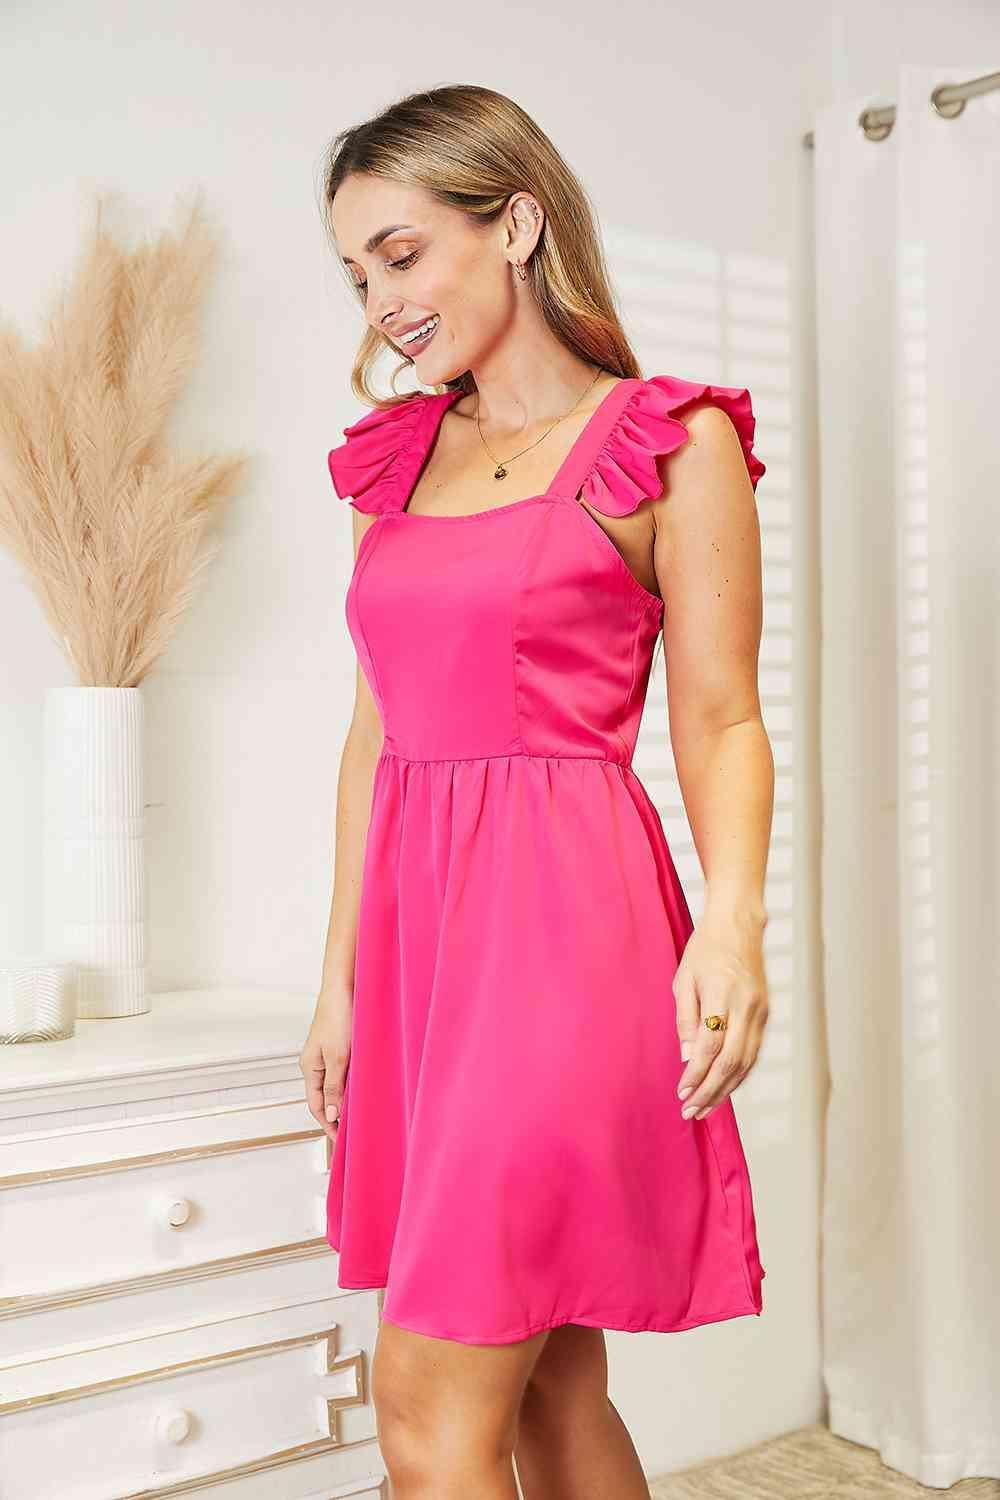 Fabulous Square Neck Hot Pink Mini Dress - MXSTUDIO.COM